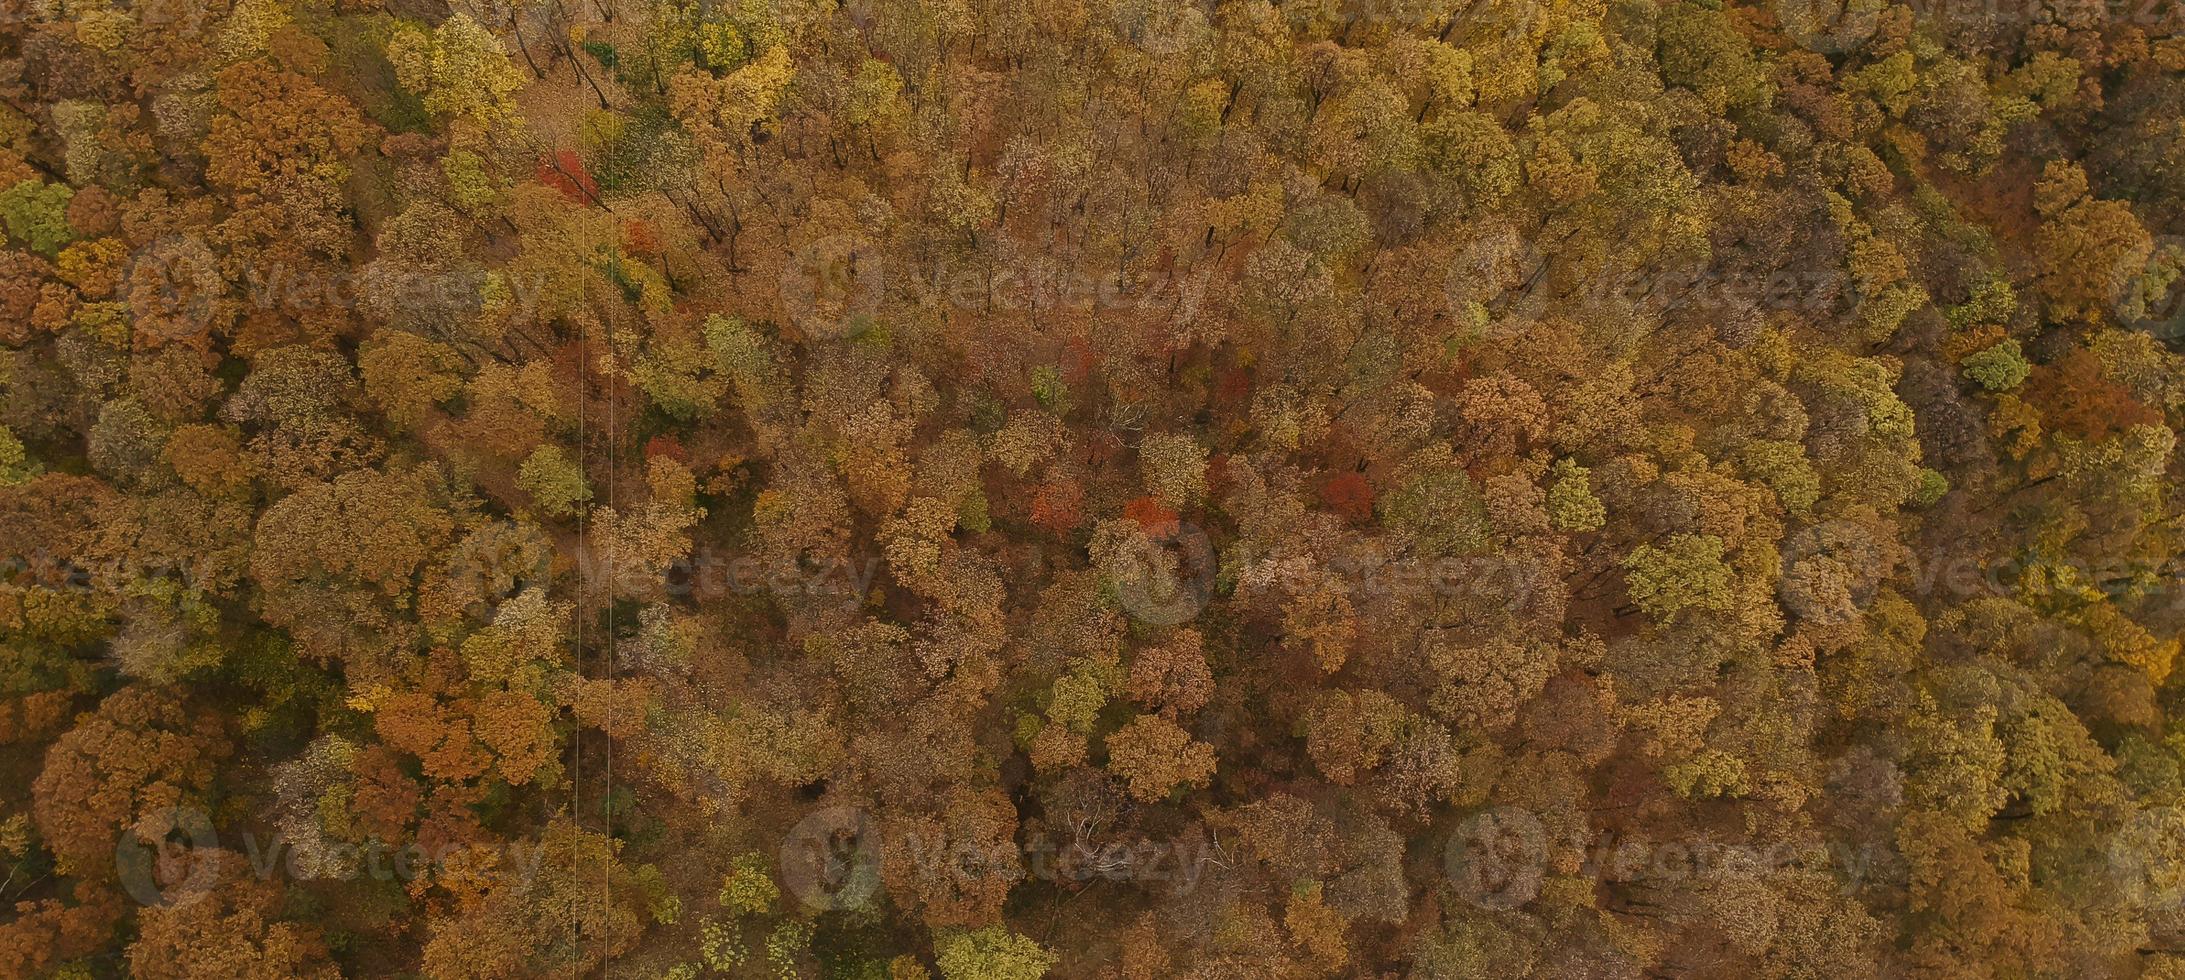 Luftaufnahme im Herbstwald foto